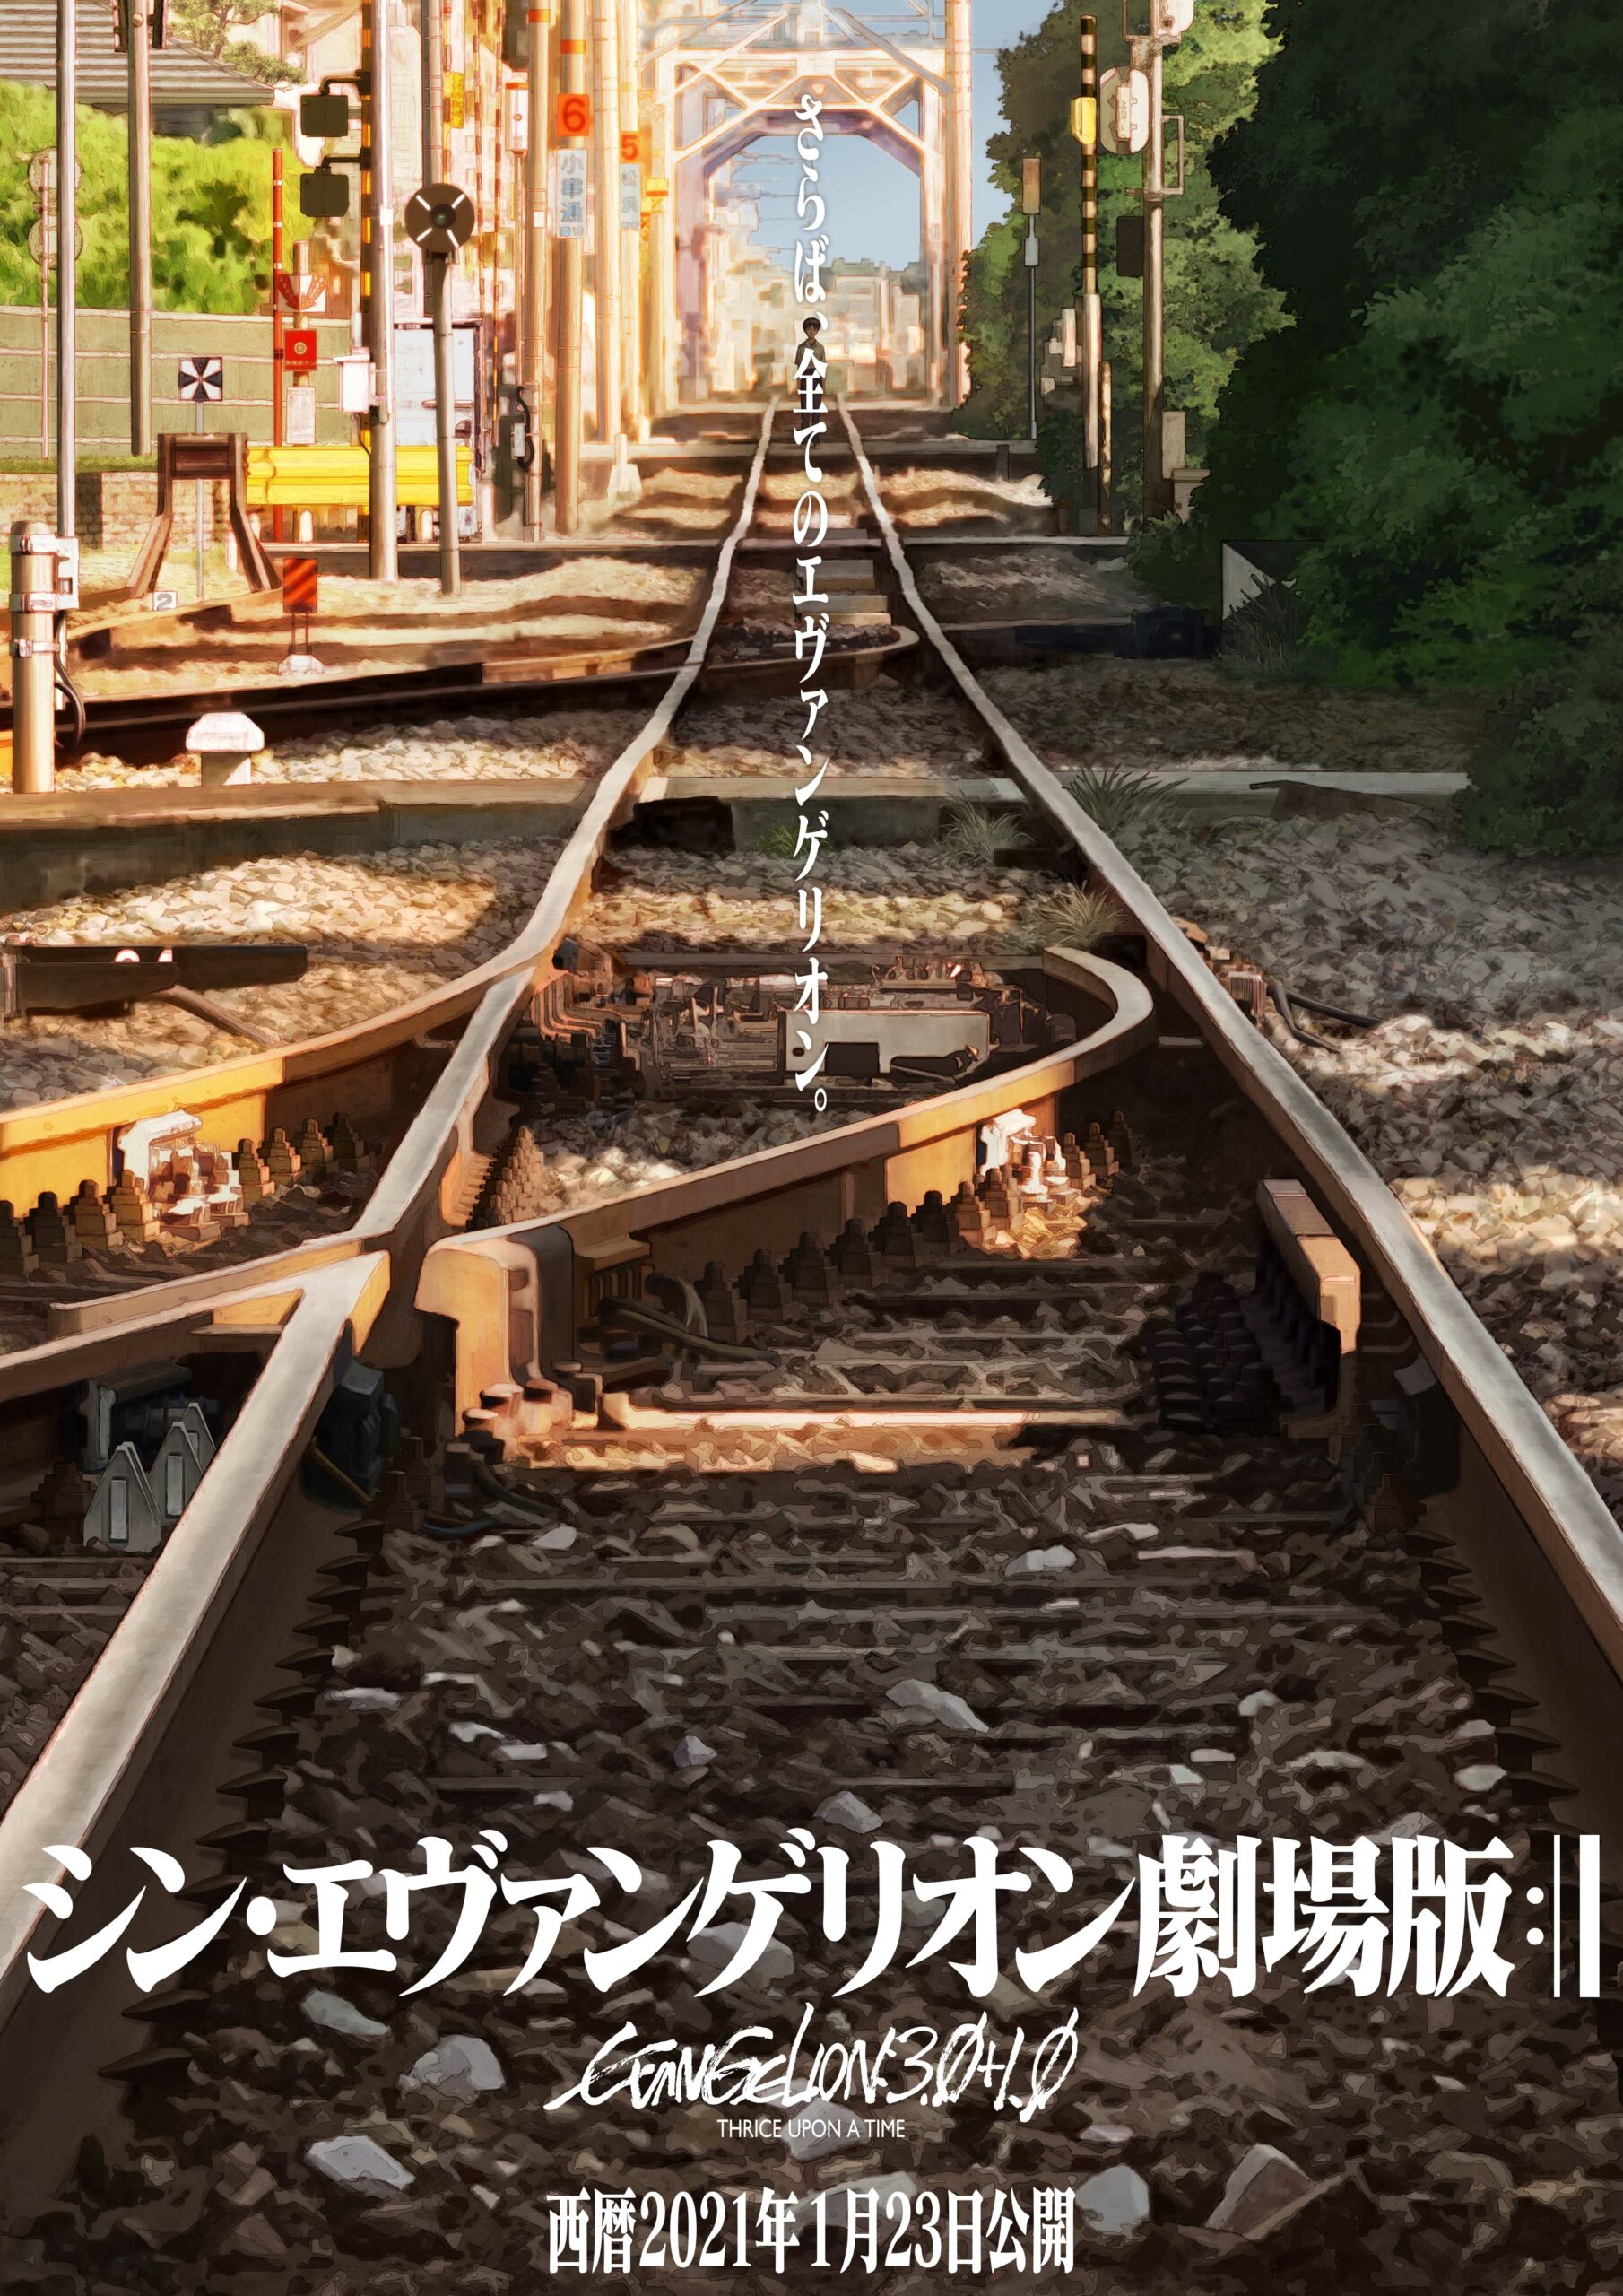 Evangelion: estreno de la película final decidido, lanzamiento del tercer teaser